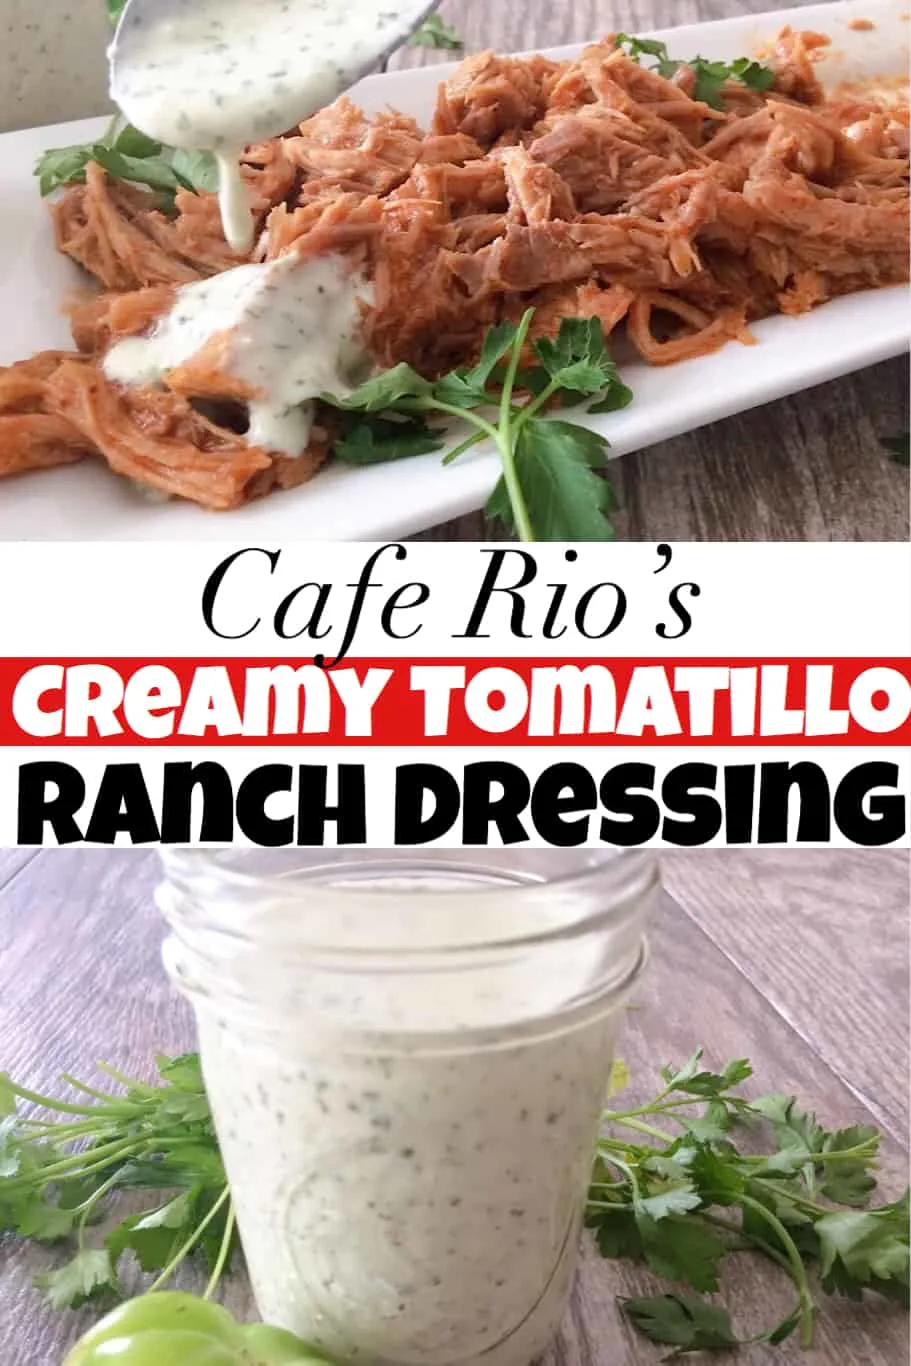 Cafe Rio's Creamy Tomatillo Ranch Dressing